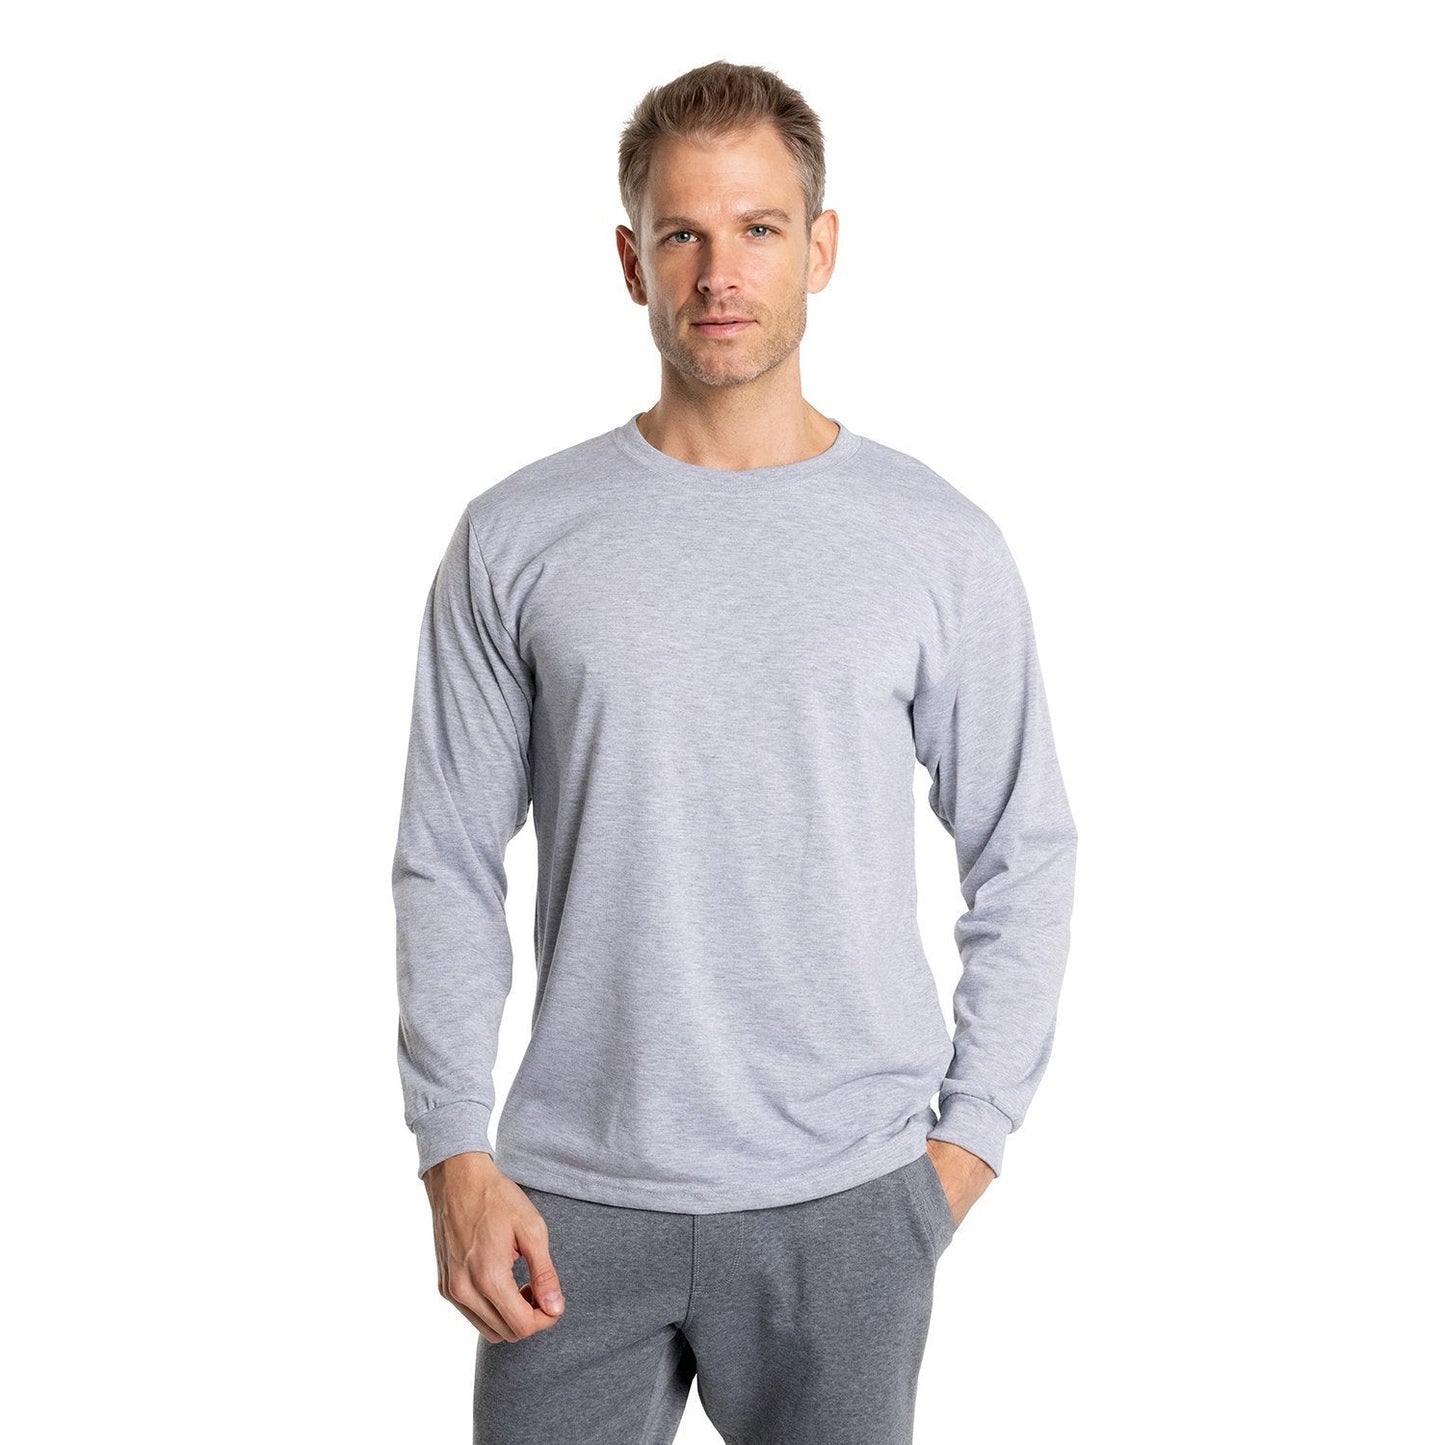 Men's SpunSoft Tech Long Sleeve Shirt